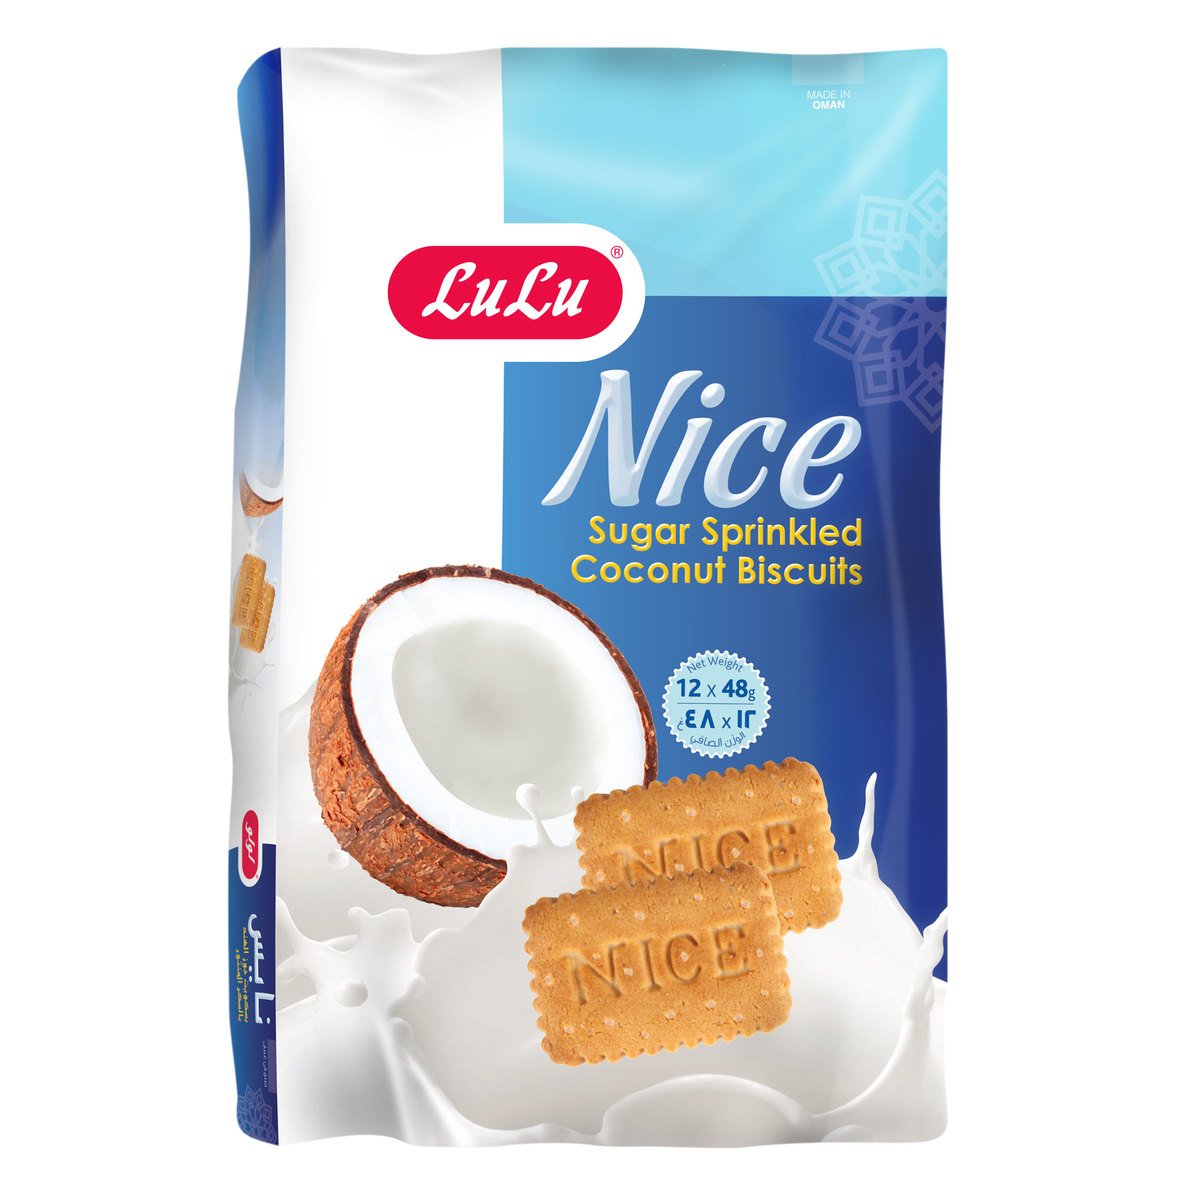 LuLu Nice Sugar Sprinkled Coconut Biscuits 48g